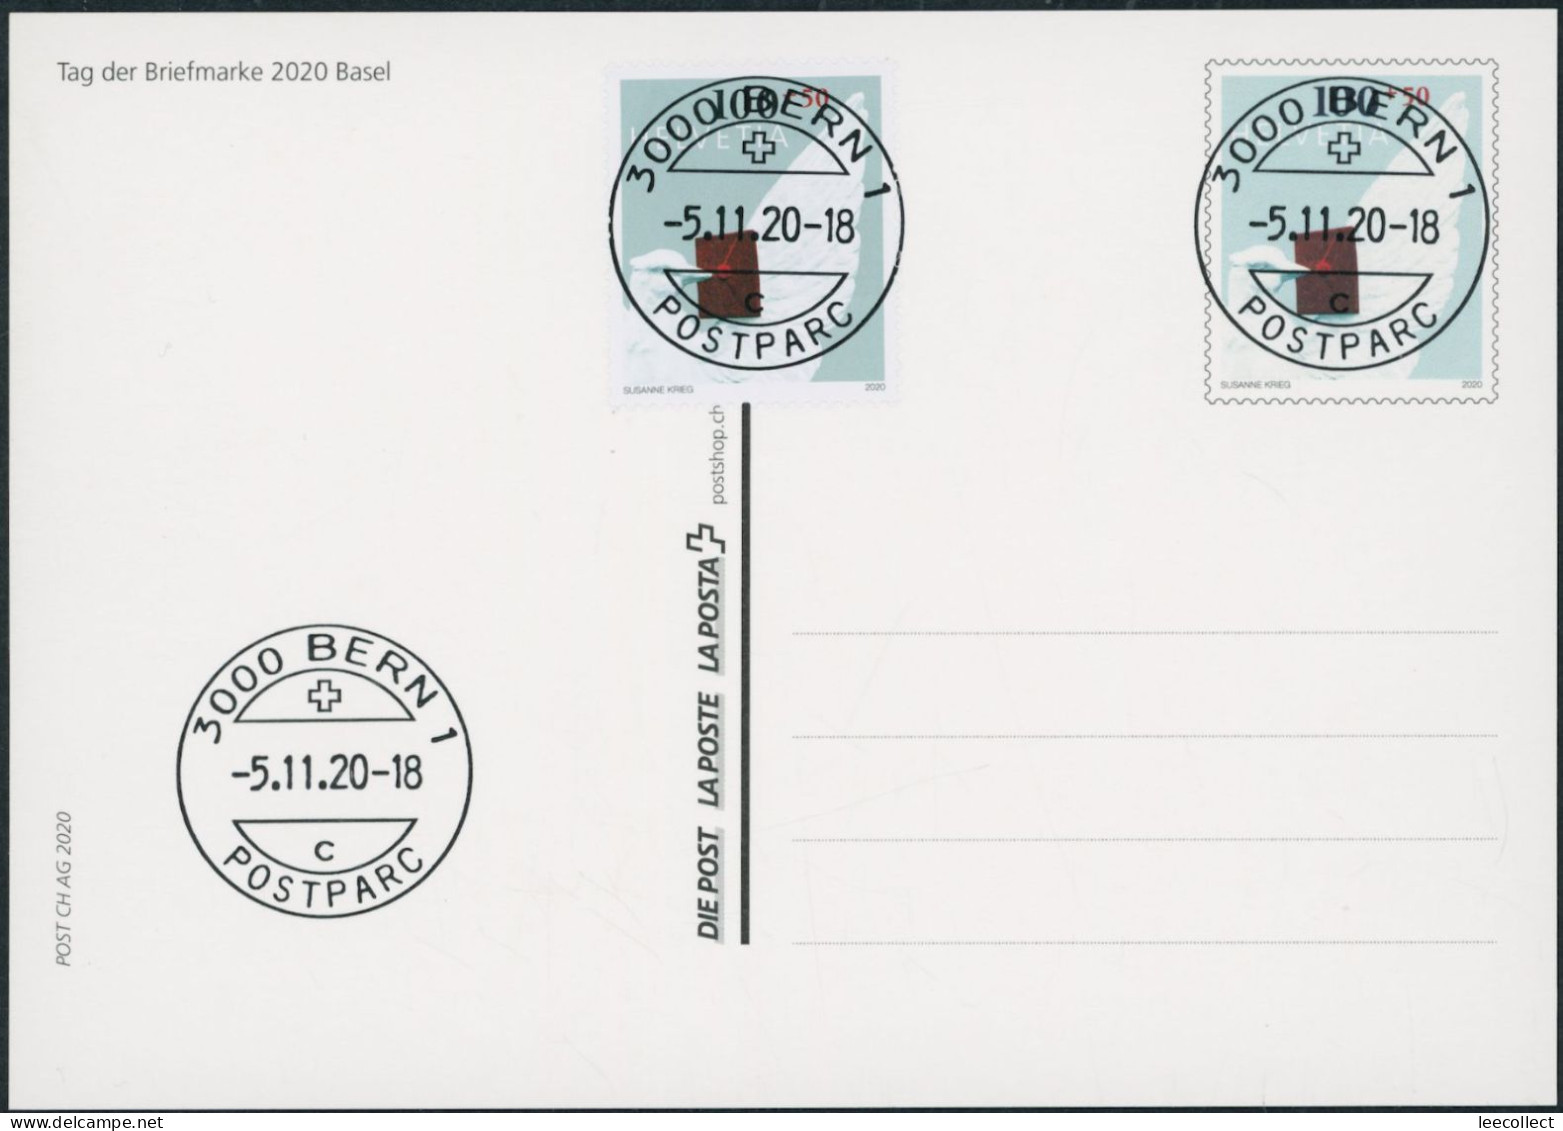 Suisse - 2020 - Tag Der Briefmarke • Basel - Bildpostkarte - Combo FDC ET - Ersttag Voll Stempel - Briefe U. Dokumente